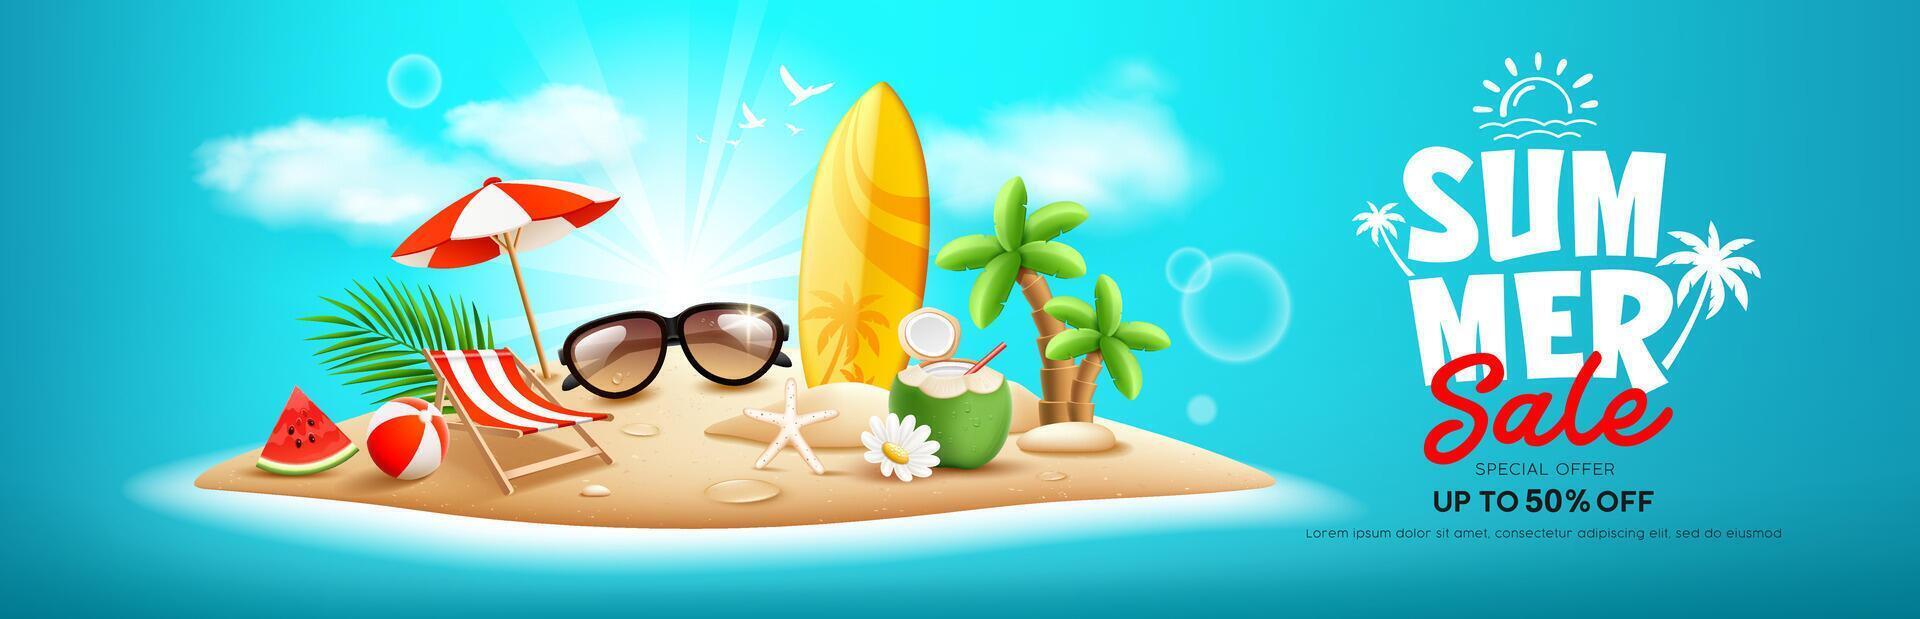 sommar försäljning ö strand, surfbräda, lugg av sand, kokos träd, vattenmelon, strand paraply, strand stol, strand boll, kokos frukt, baner design, på moln blå bakgrund vektor